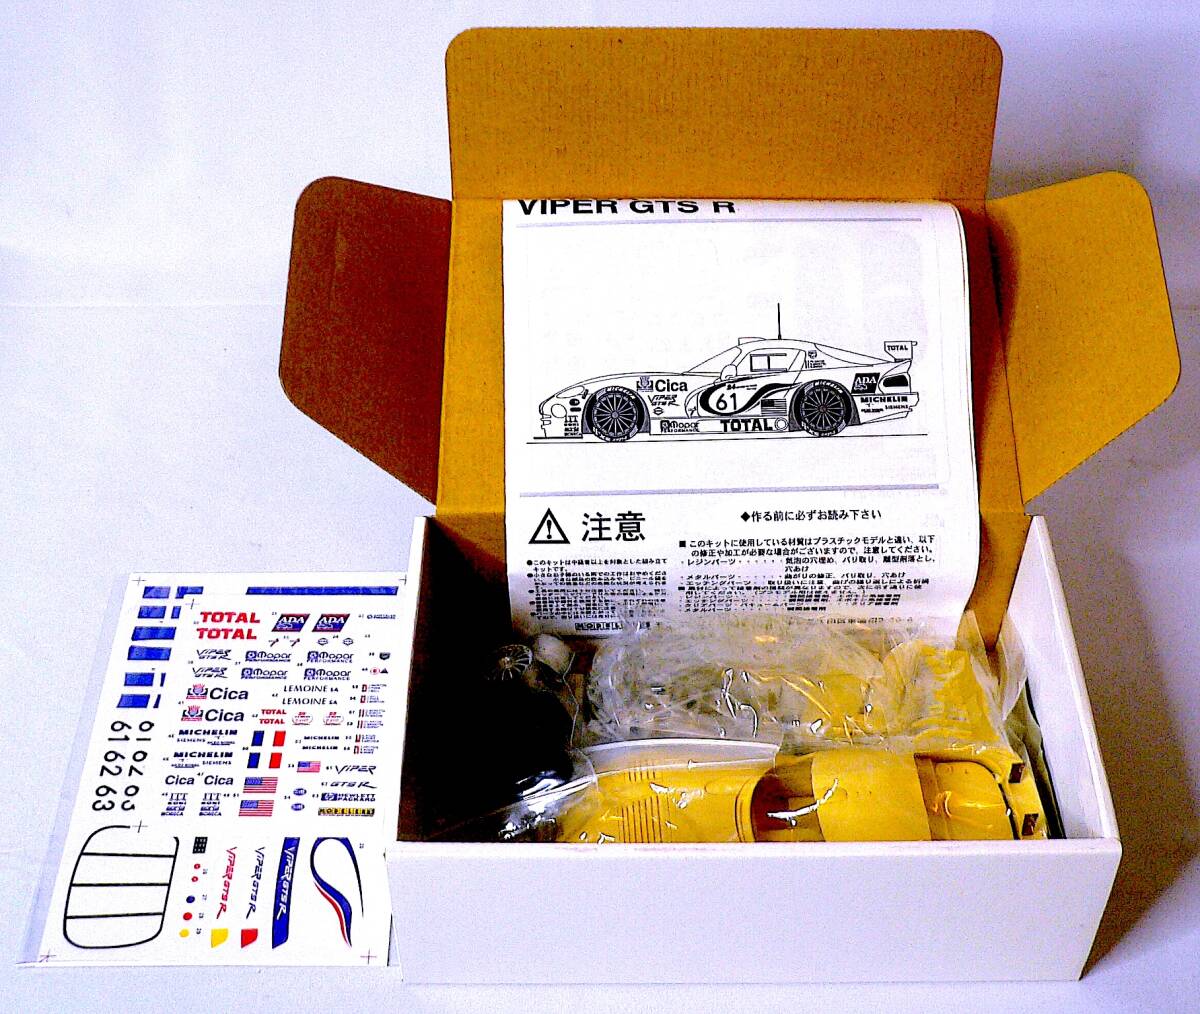 モデラーズ 絶版 1/24 チーム オレカ バイパー GTS R レジンキャストキット プラモデル 未使用 未組立 の画像4